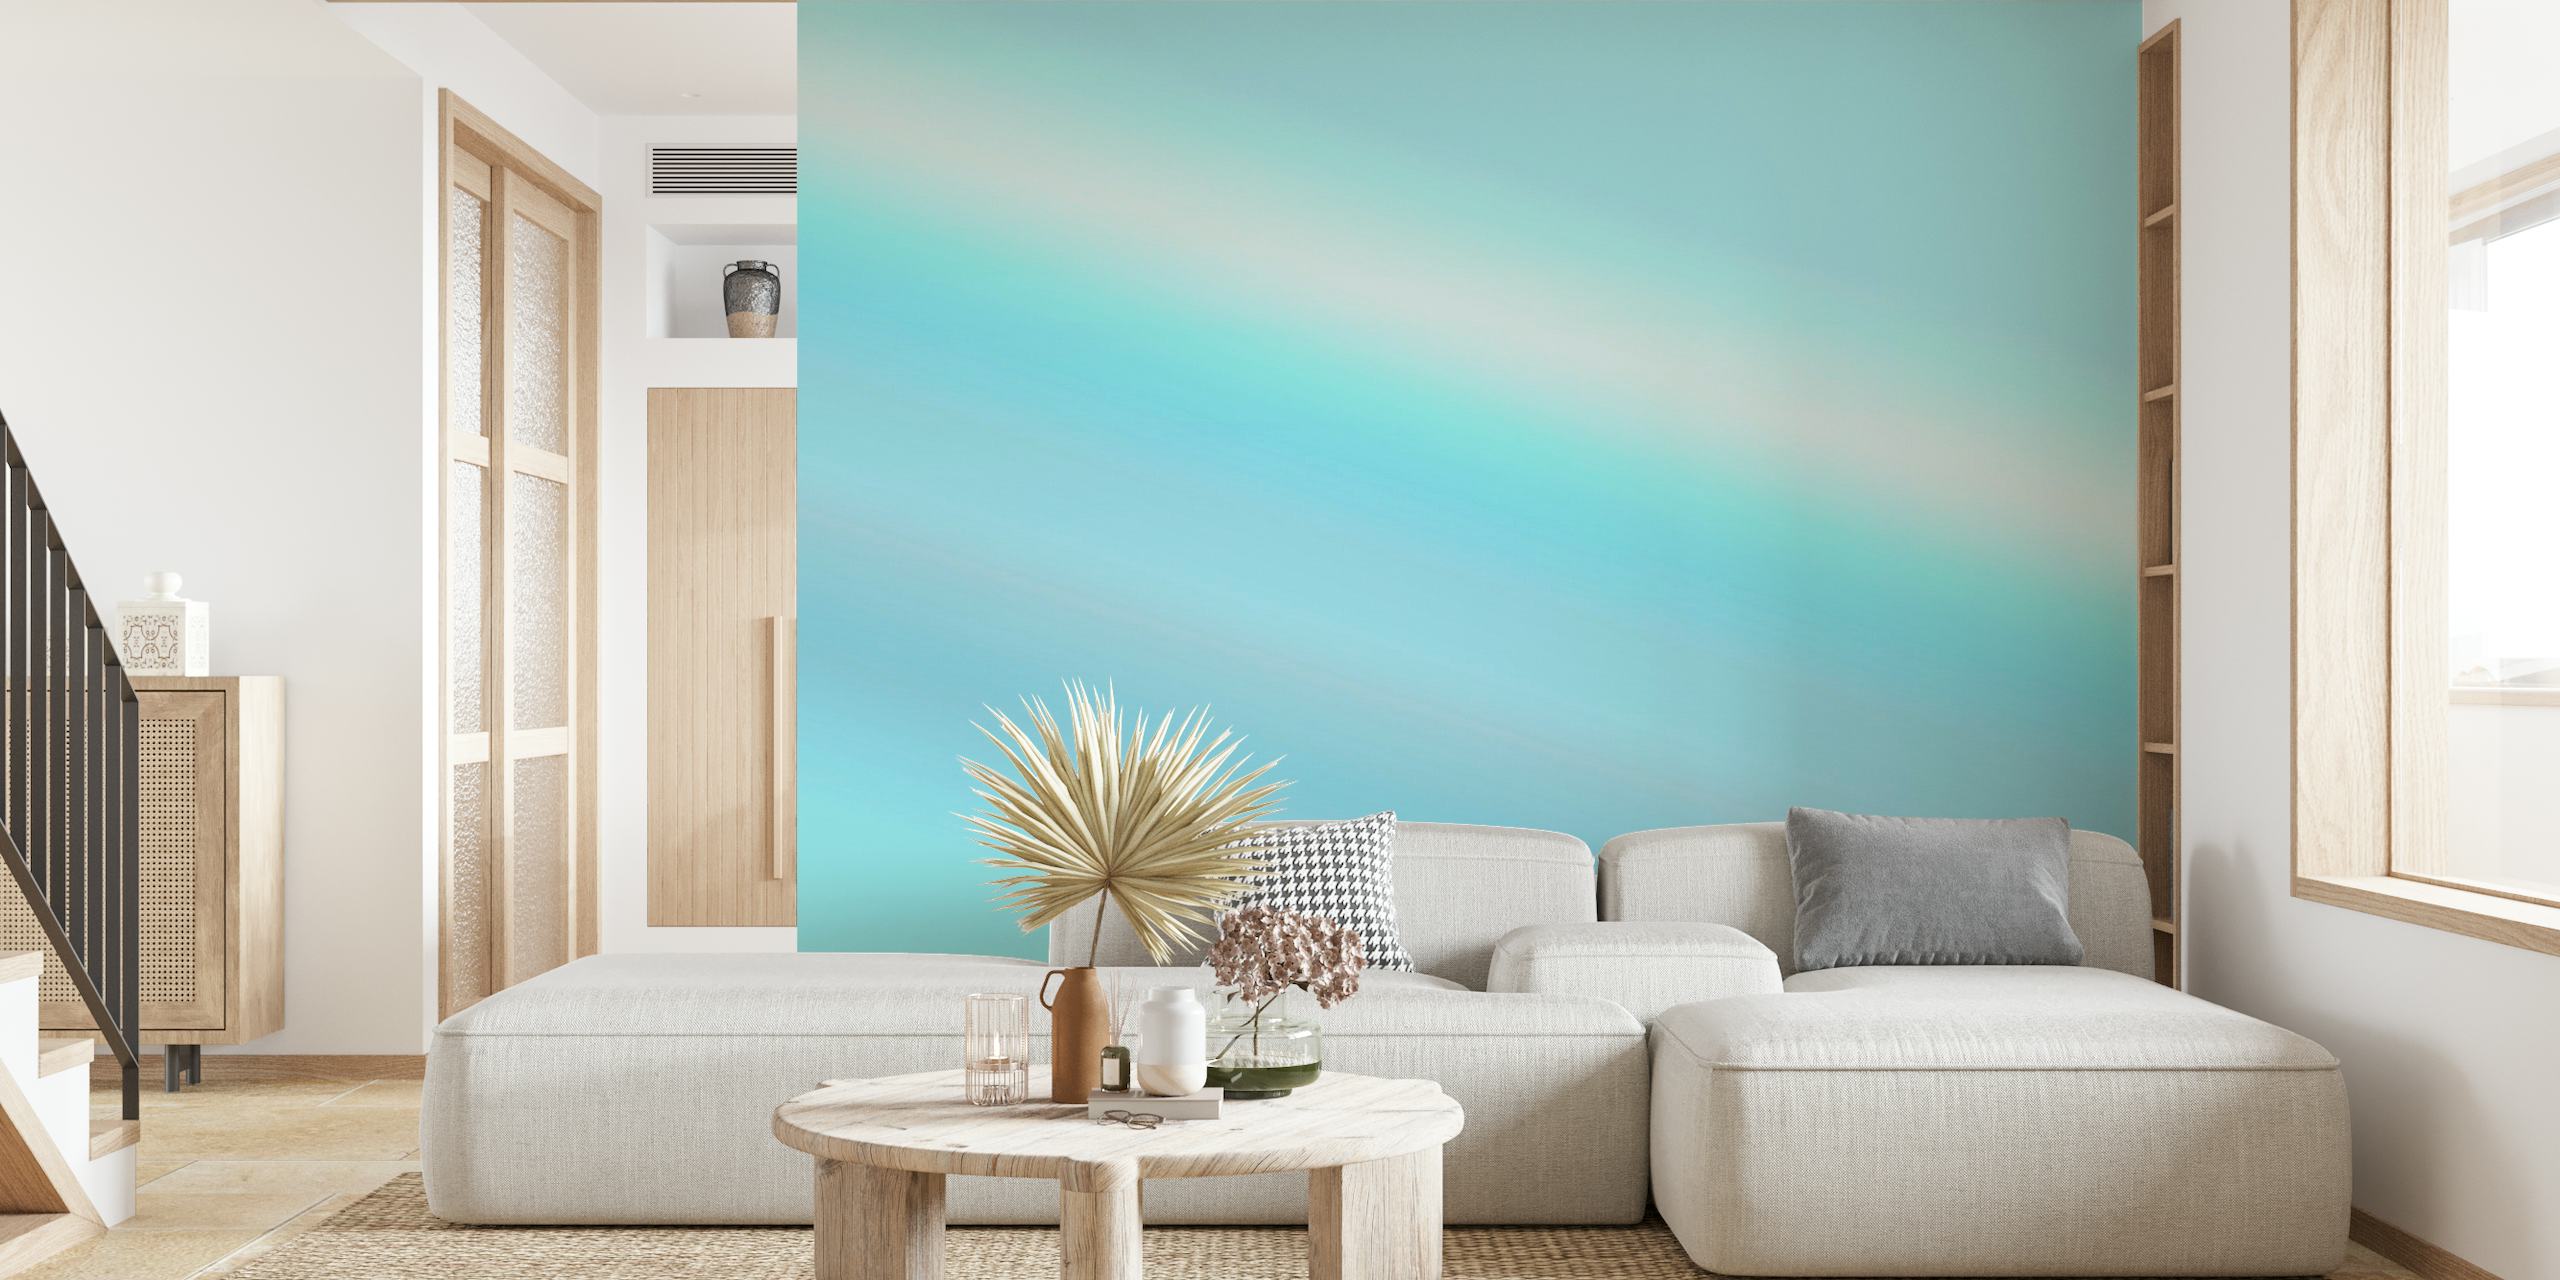 Abstrakt blå gradient vægmaleri, der går fra mørk til lyseblå, og fremkalder en fredfyldt himmel